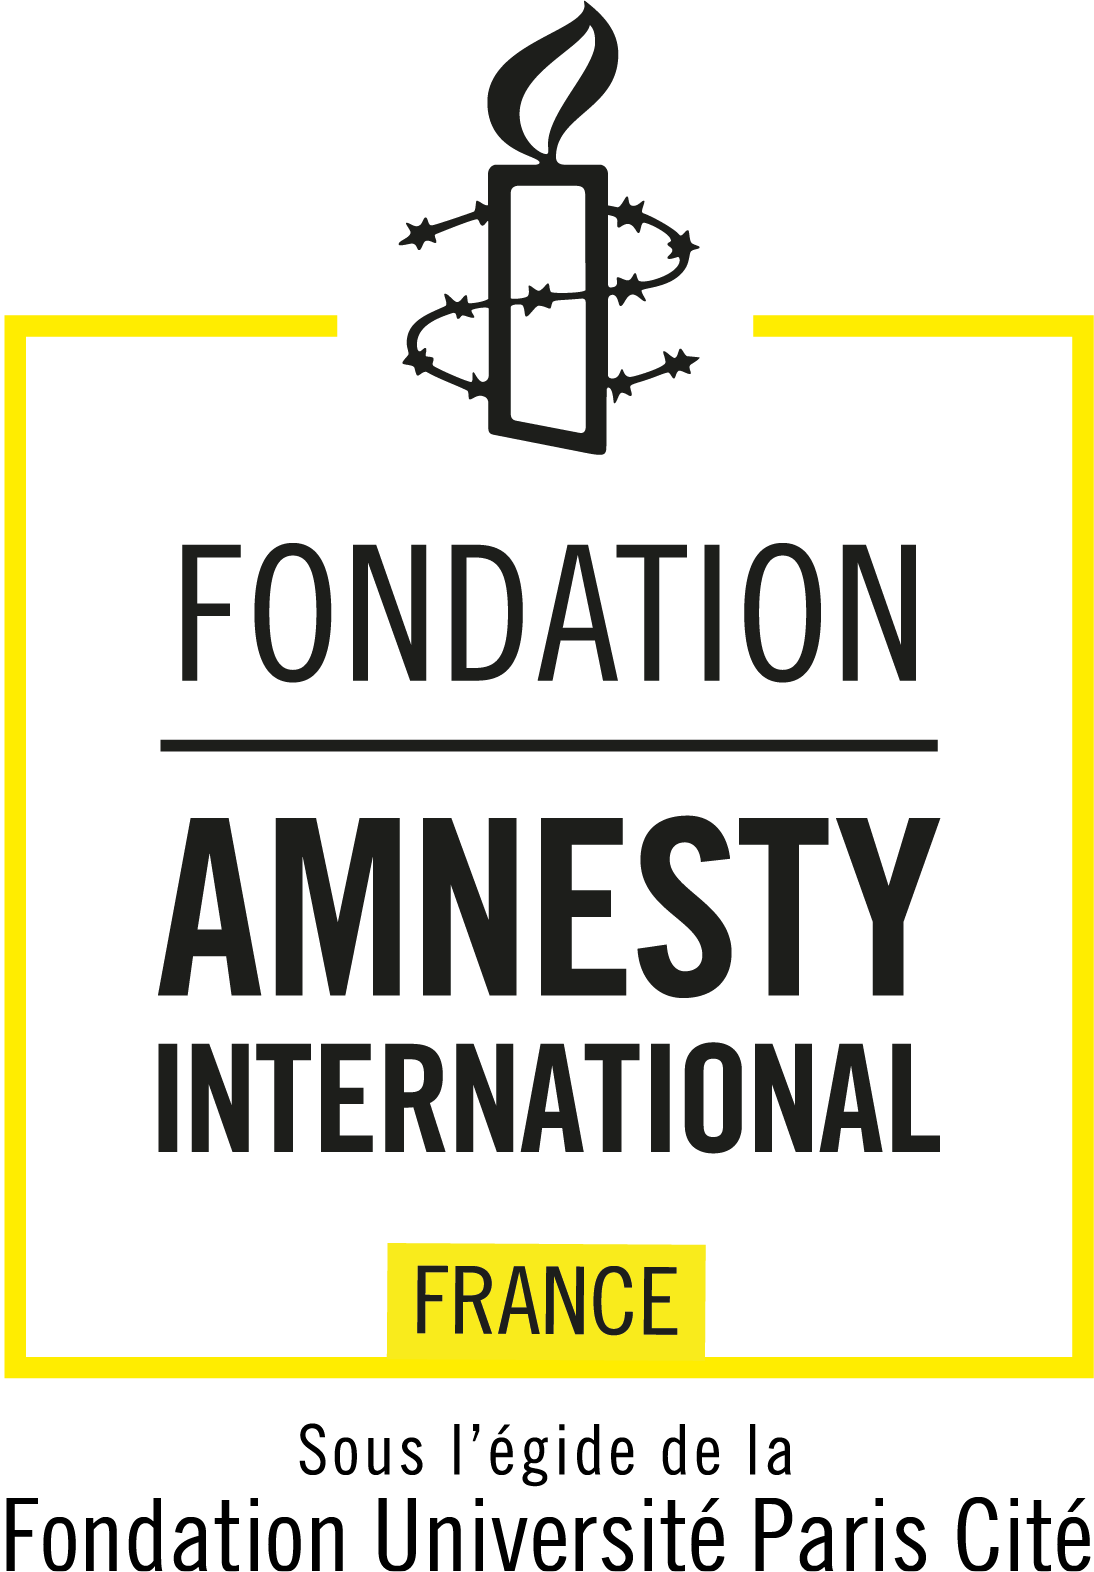 Logo Fondation Amnesty International France